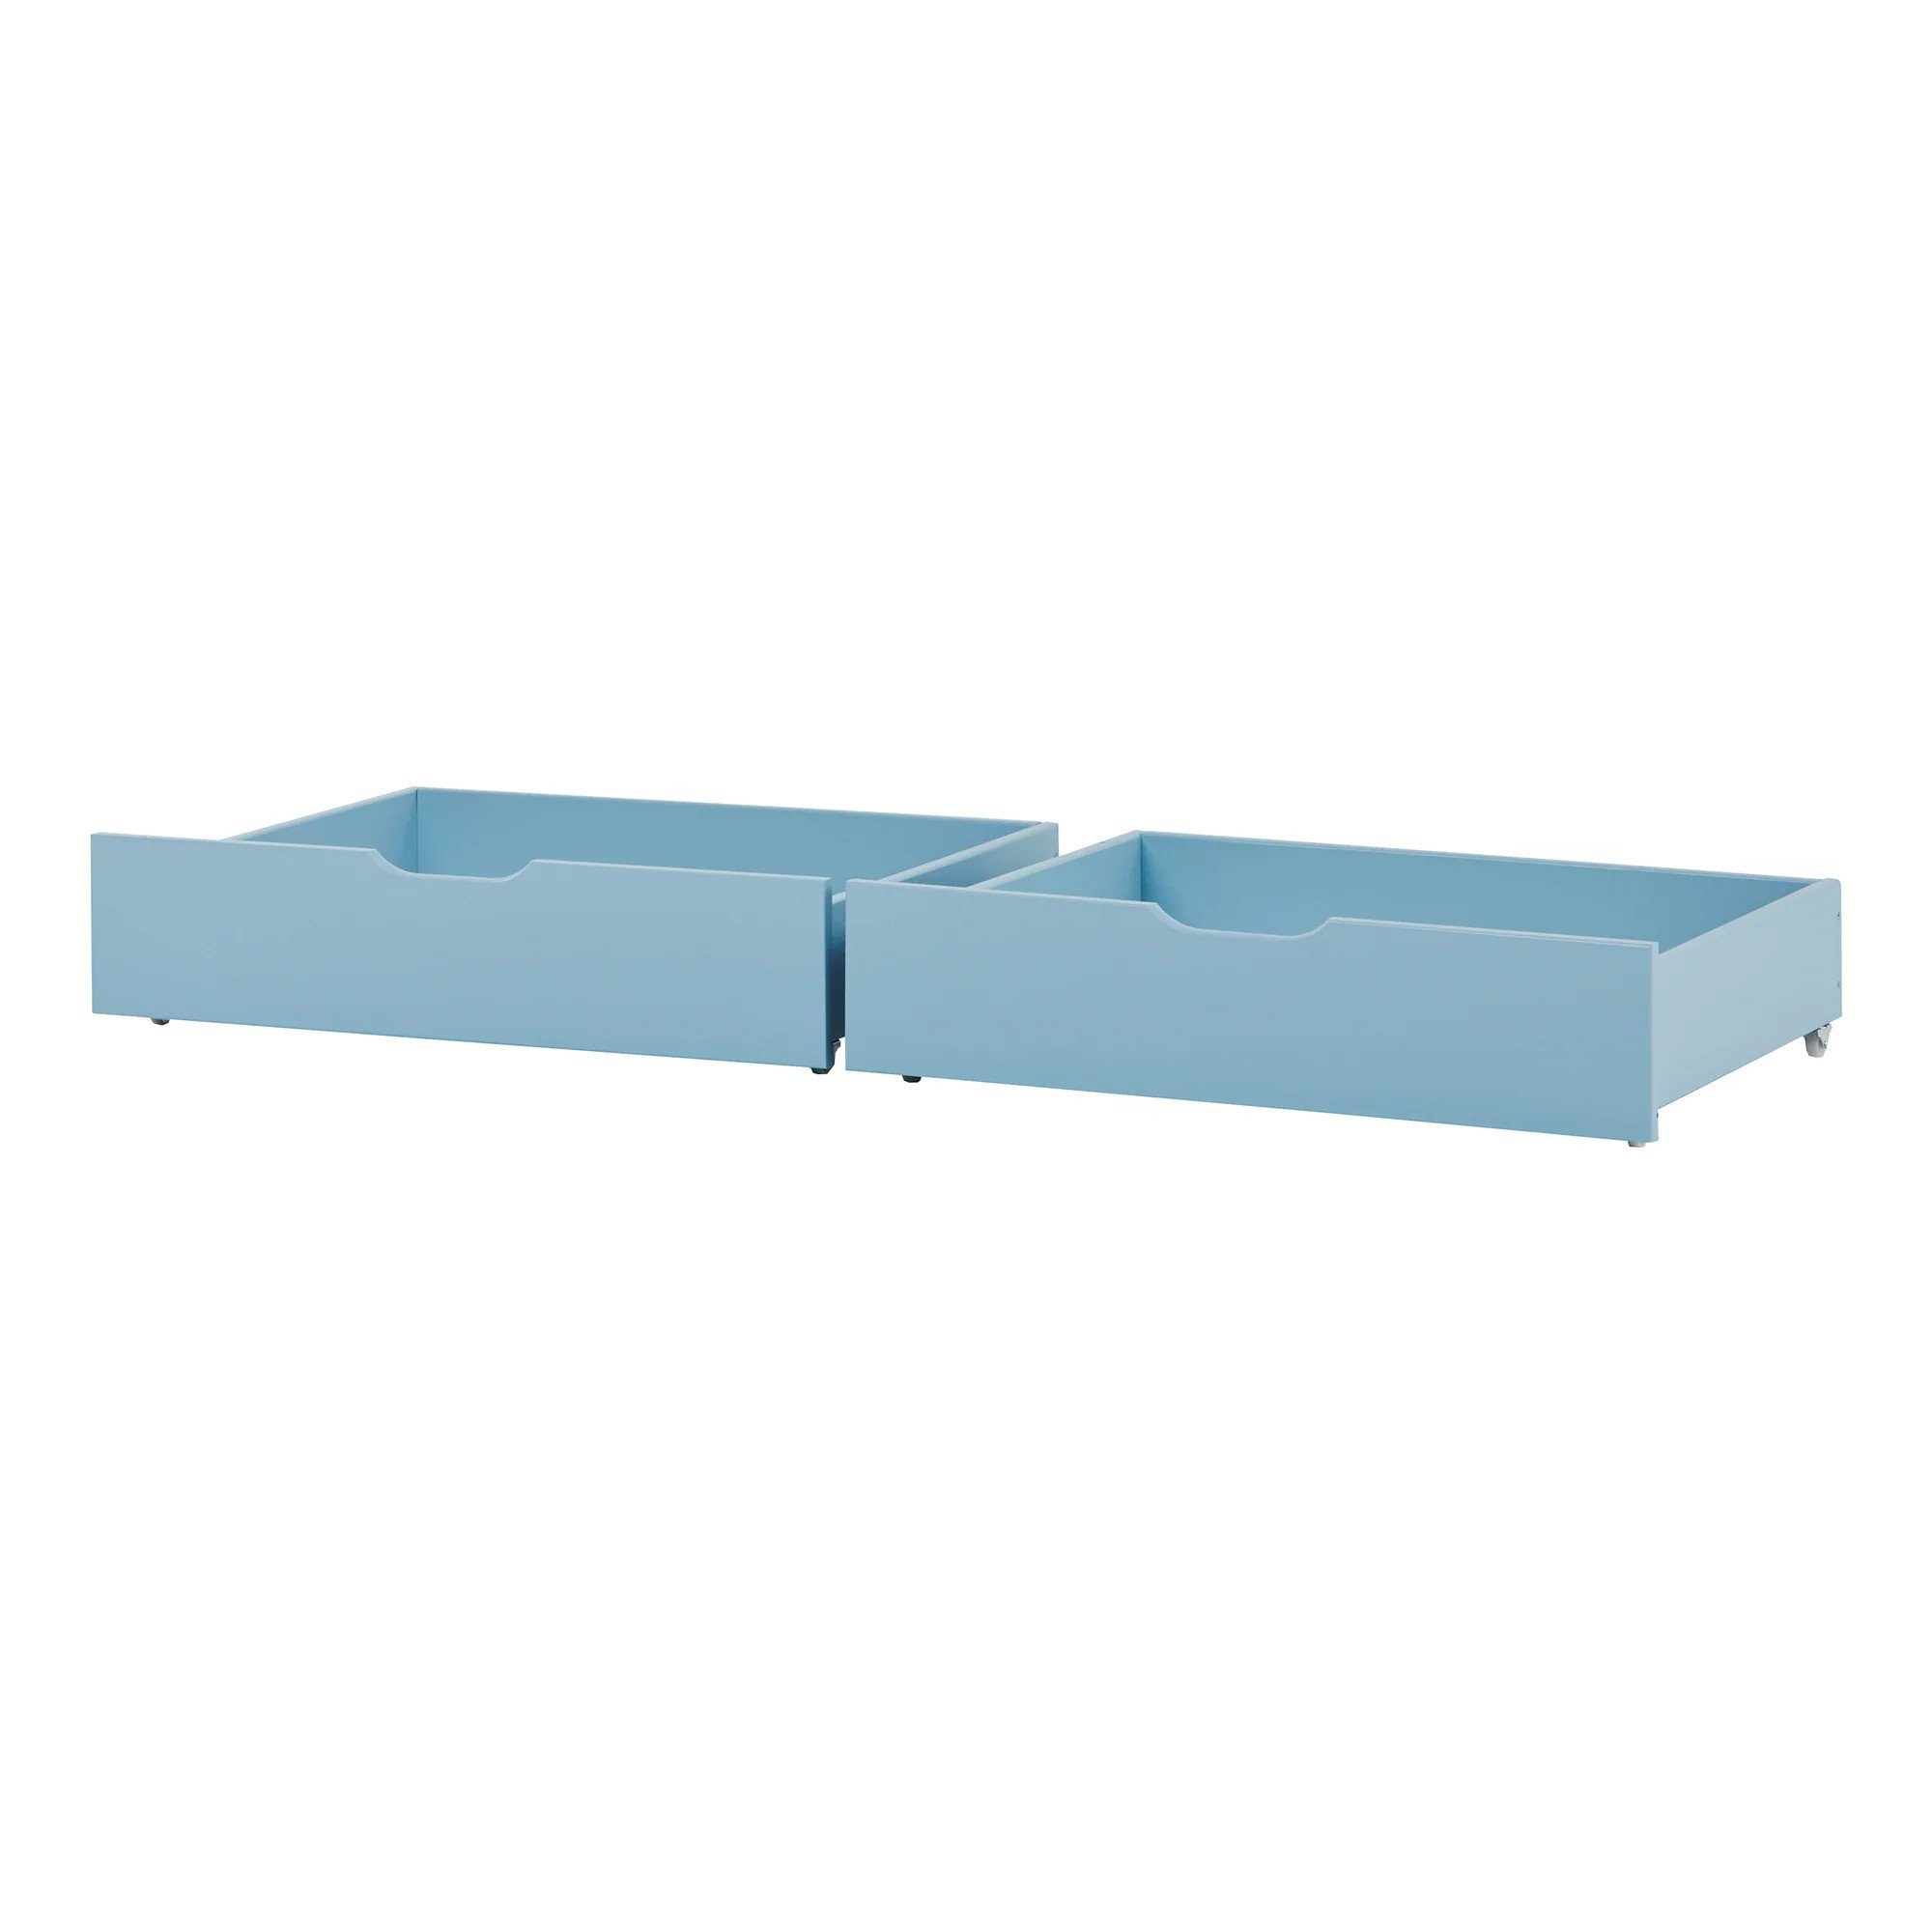 Hoppekids Bettschubkasten Schubladenset für 70x160 cm Betten Blau